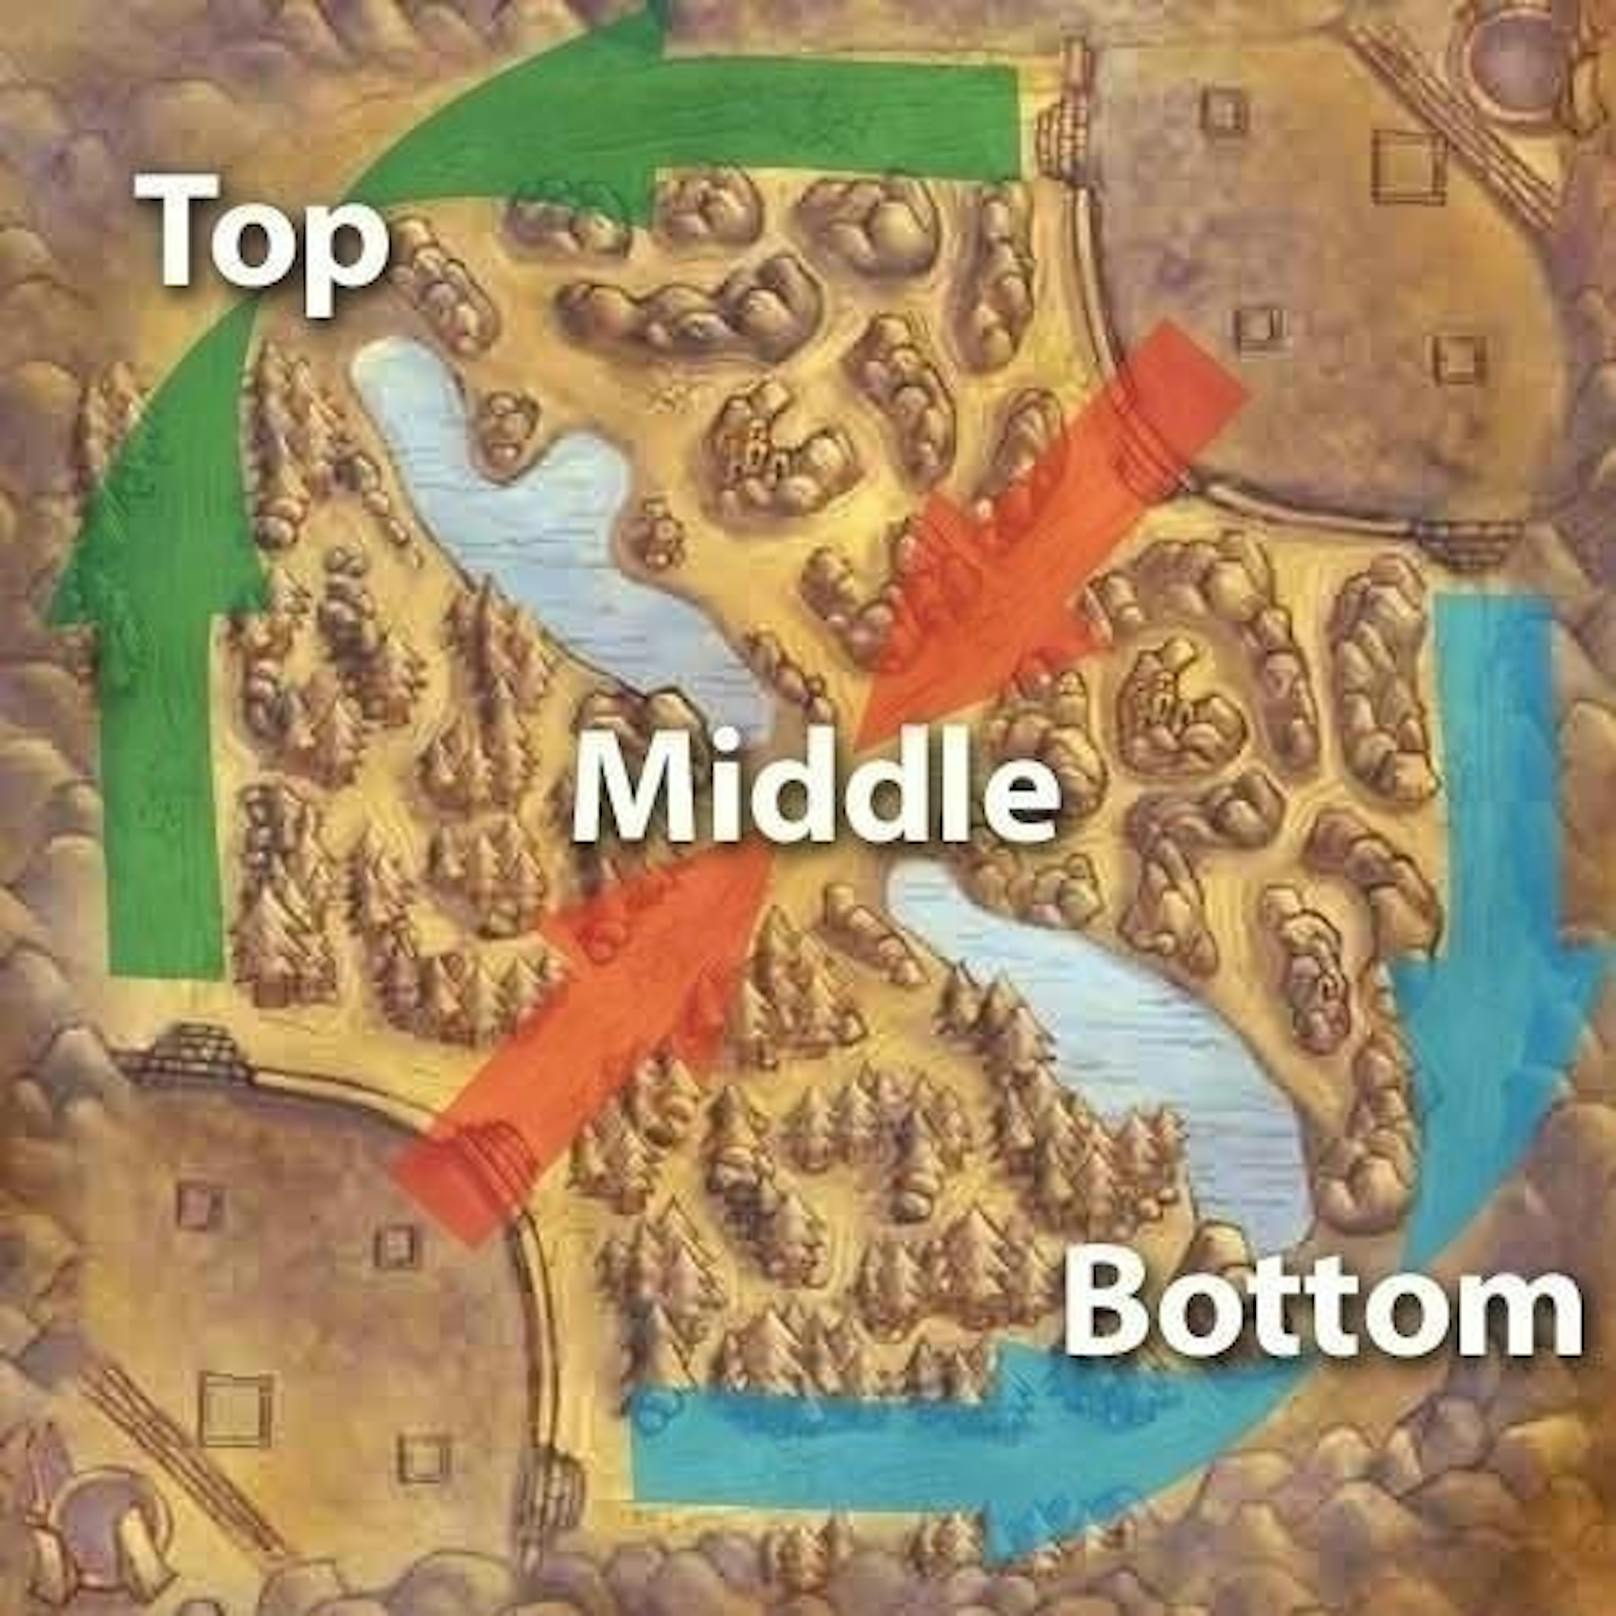 <b>Lane:</b> Ein Begriff aus den Mobas. Das Spiel läuft auf einem Schlachtfeld, das in drei Hauptwege unterteilt wird. Diese Lanes sind unterteilt in Top (oben), Middle (Mitte) und Bottom (unten). Die Spieler teilen sich auf den Lanes auf und versuchen diese zu dominieren.